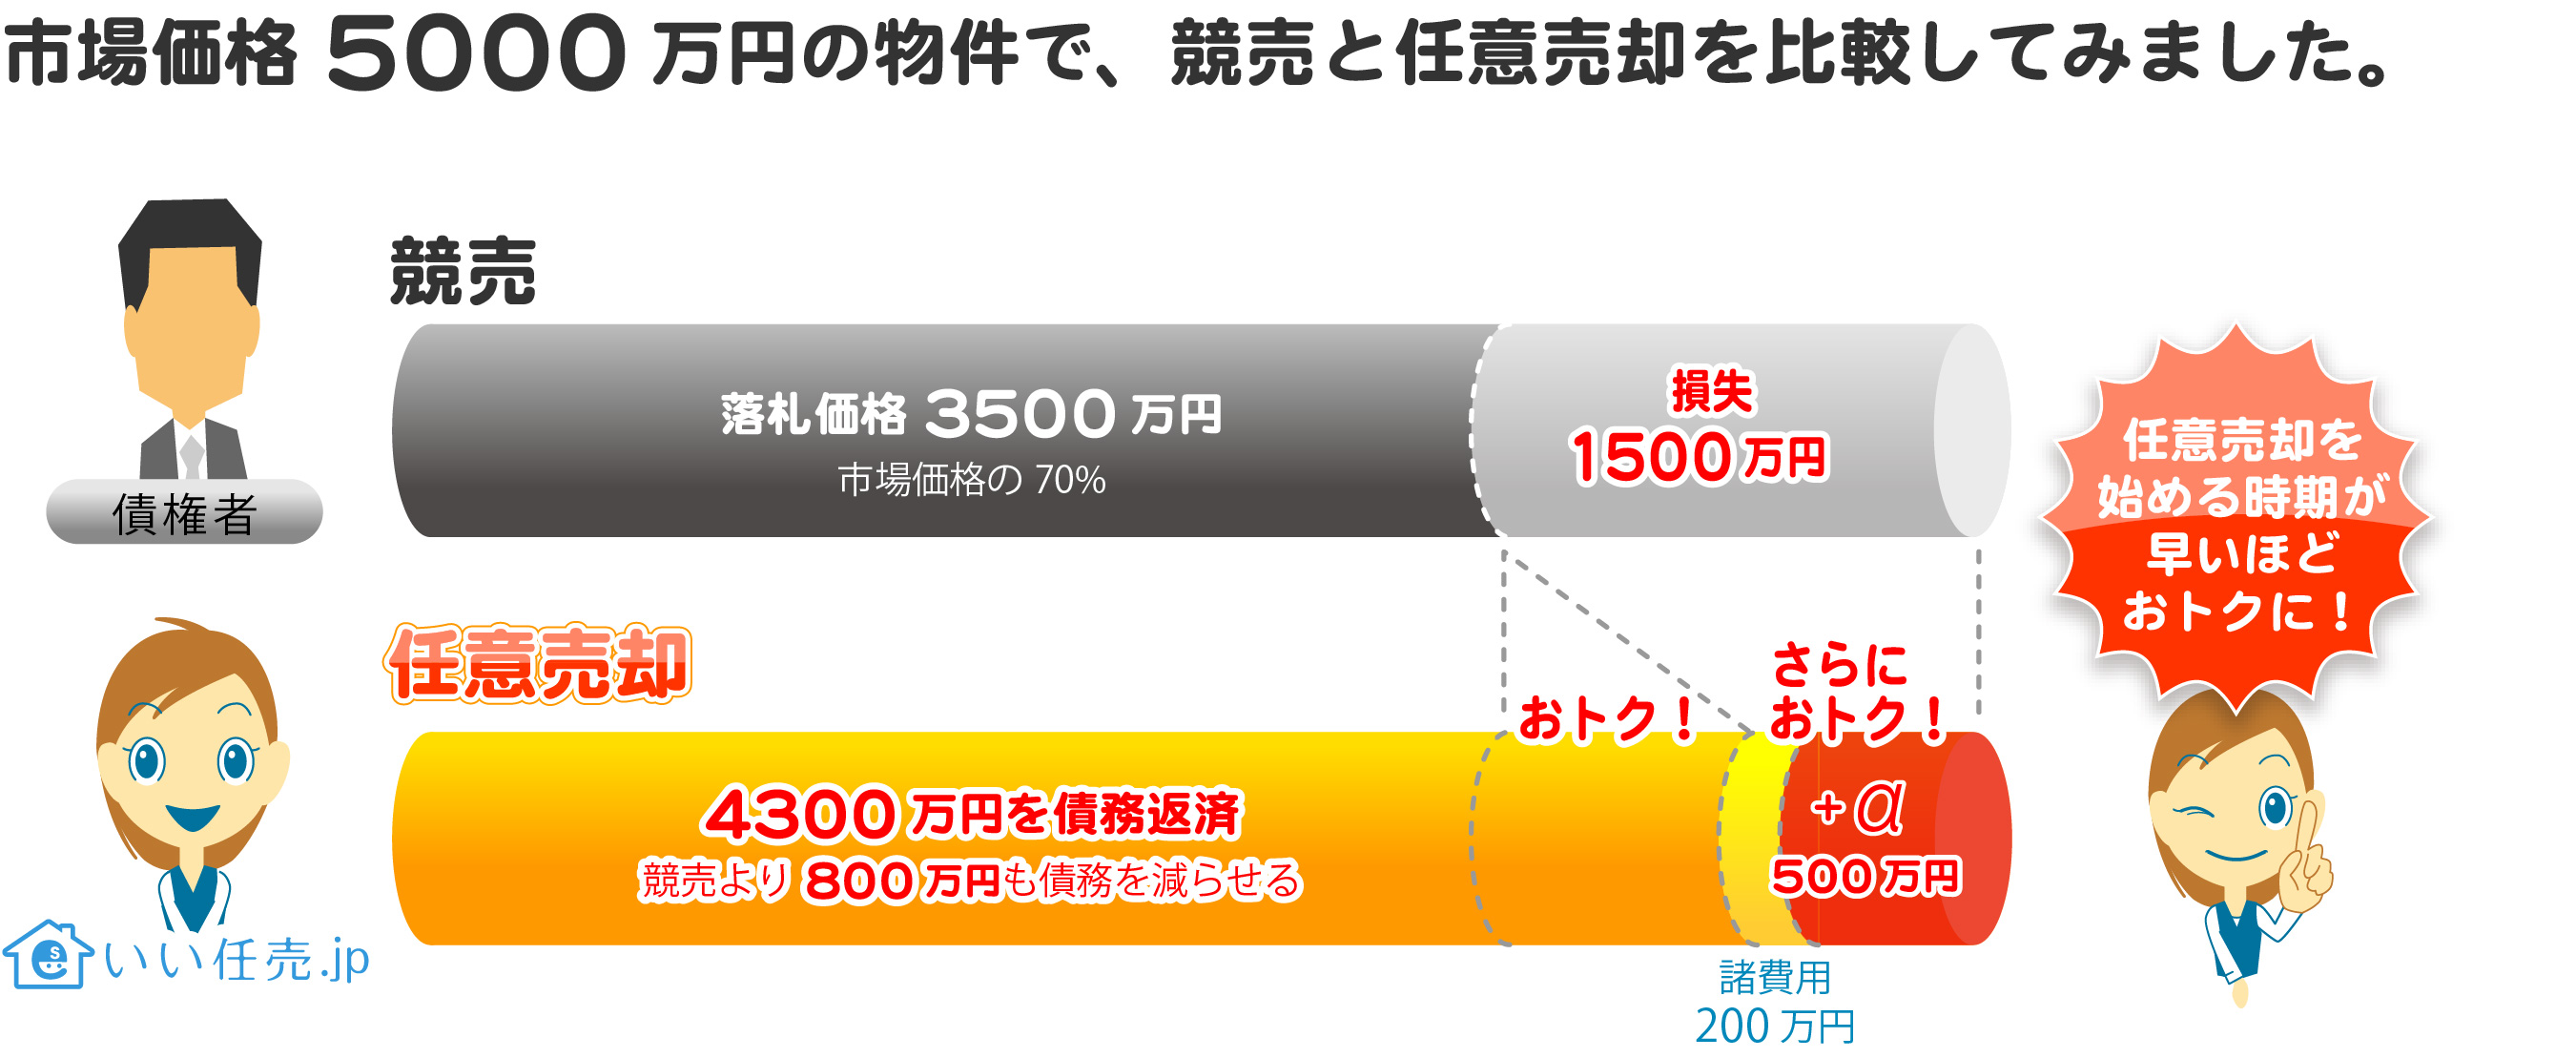 市場価格5000万円の物件で、競売と任意売却を比較してみました。